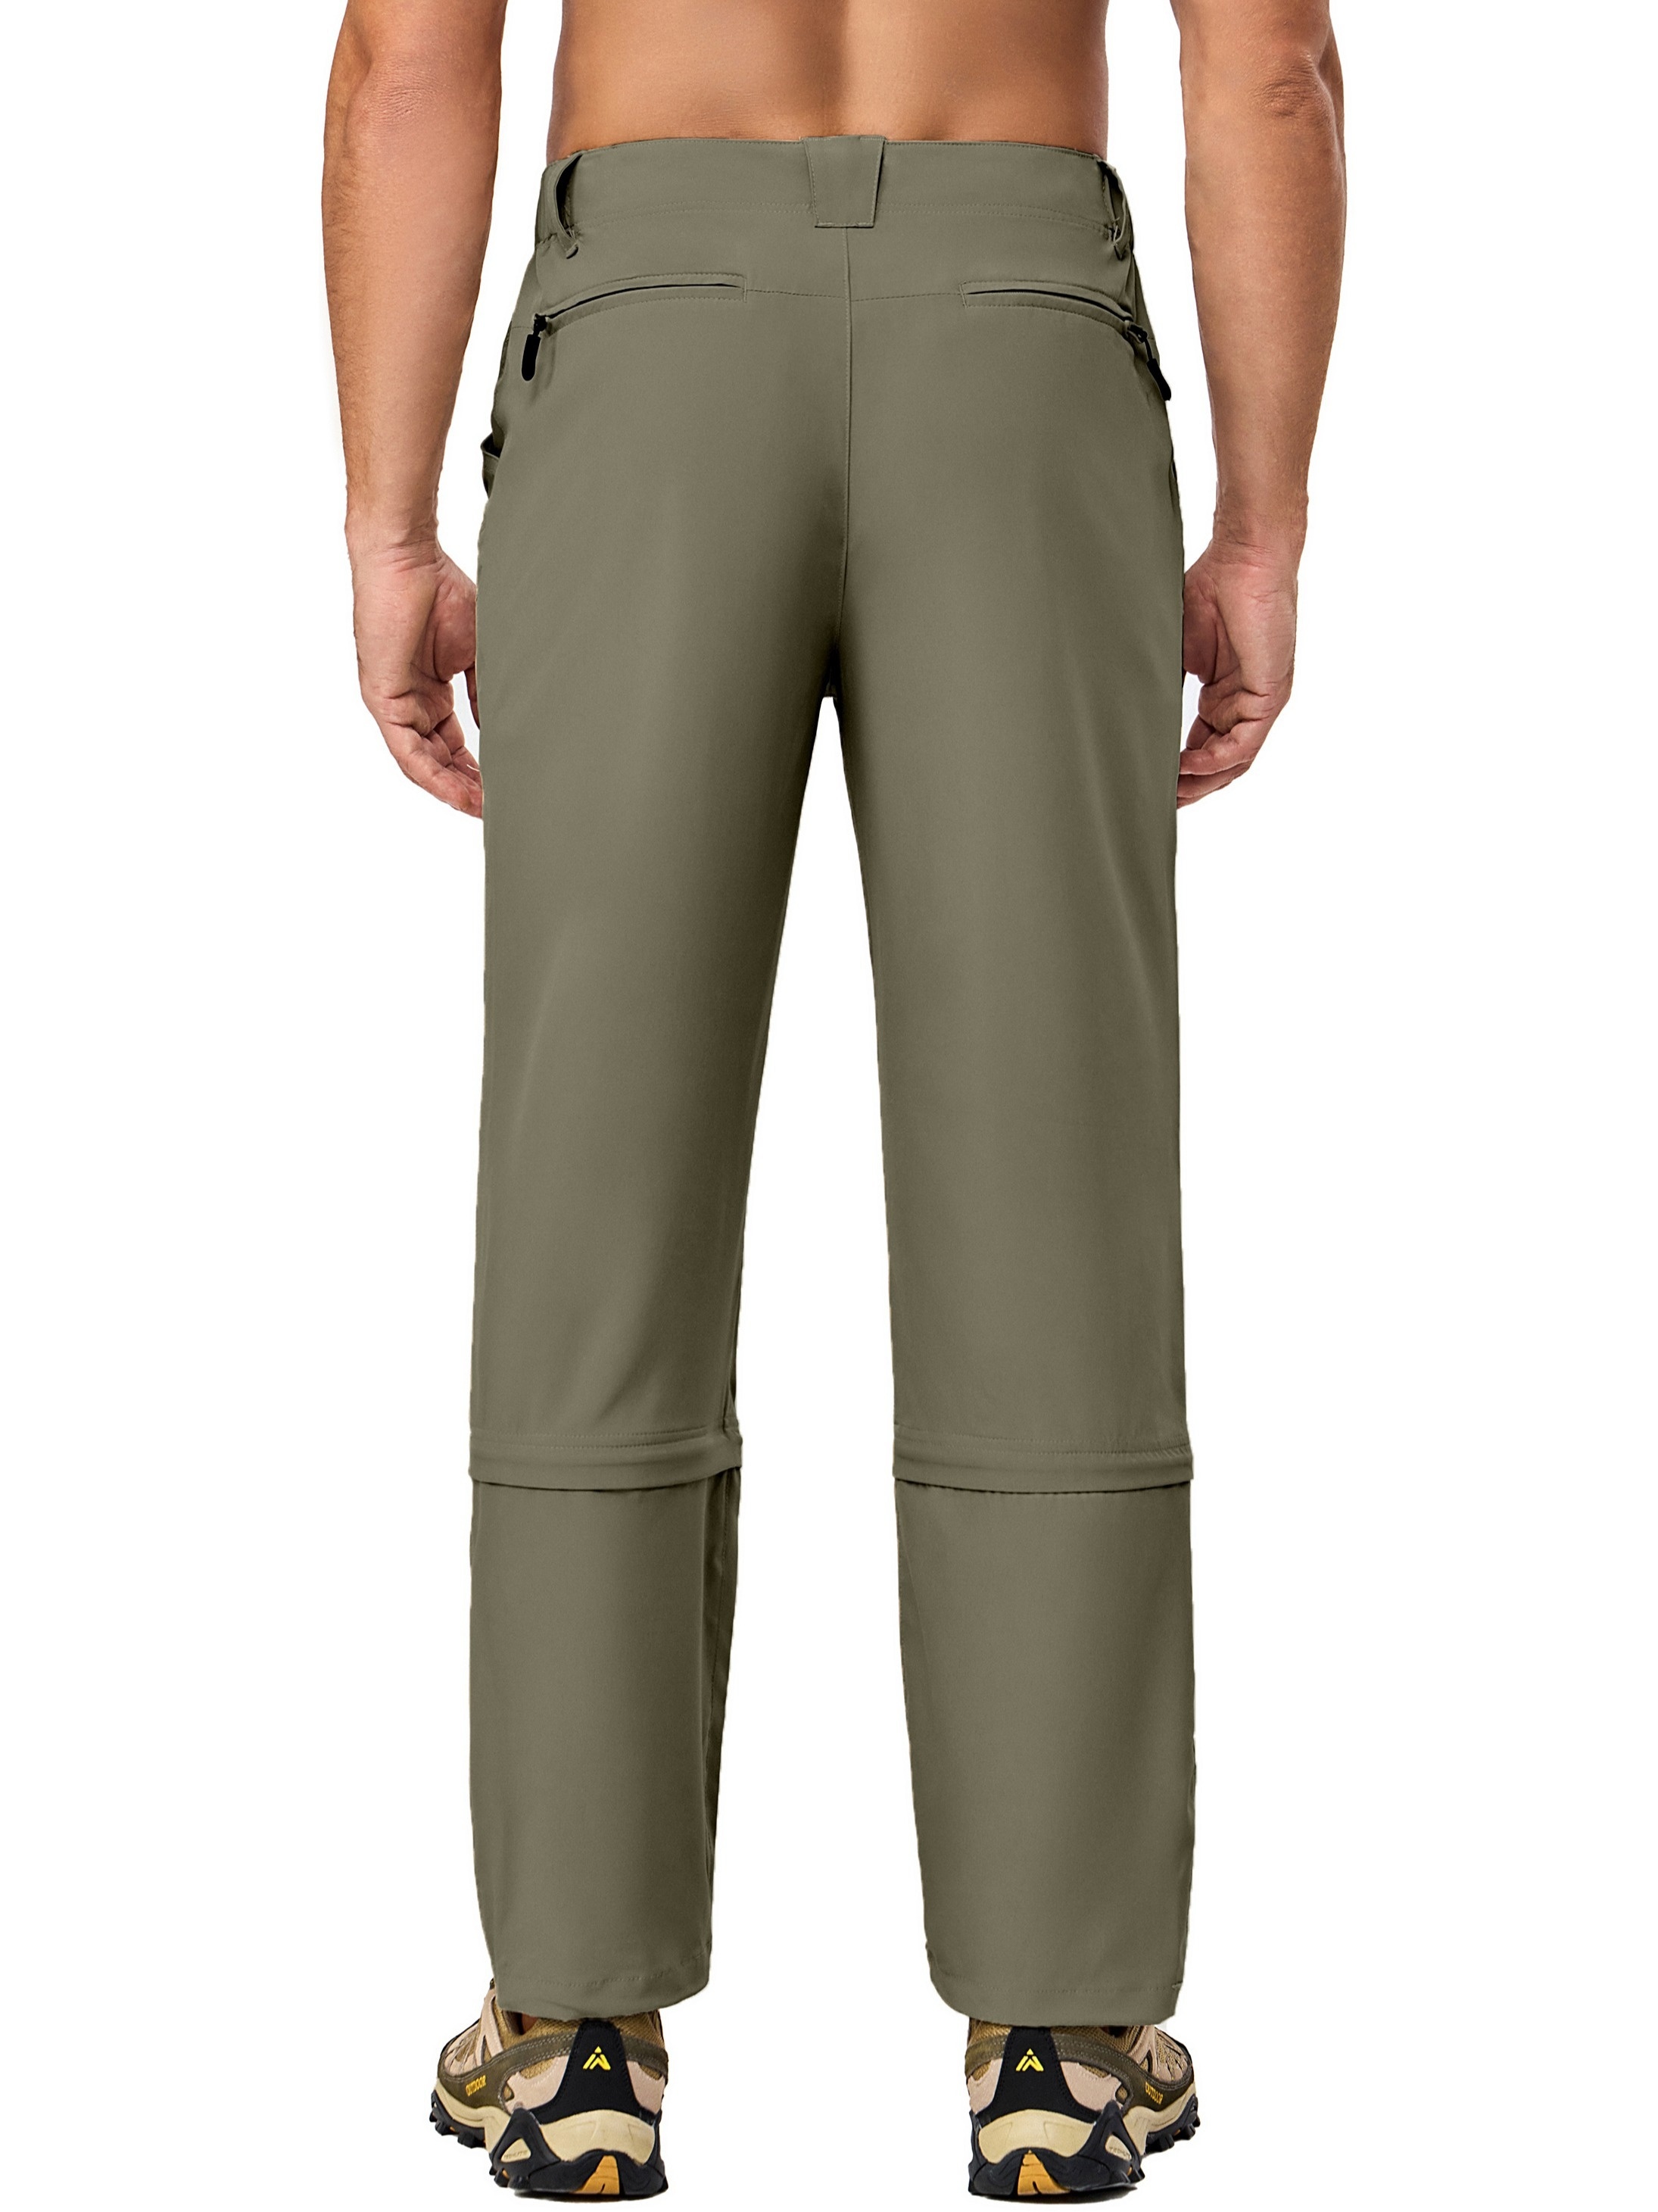 Men's Convertible Hiking Pants Quick Dry Lightweight Zip - Temu